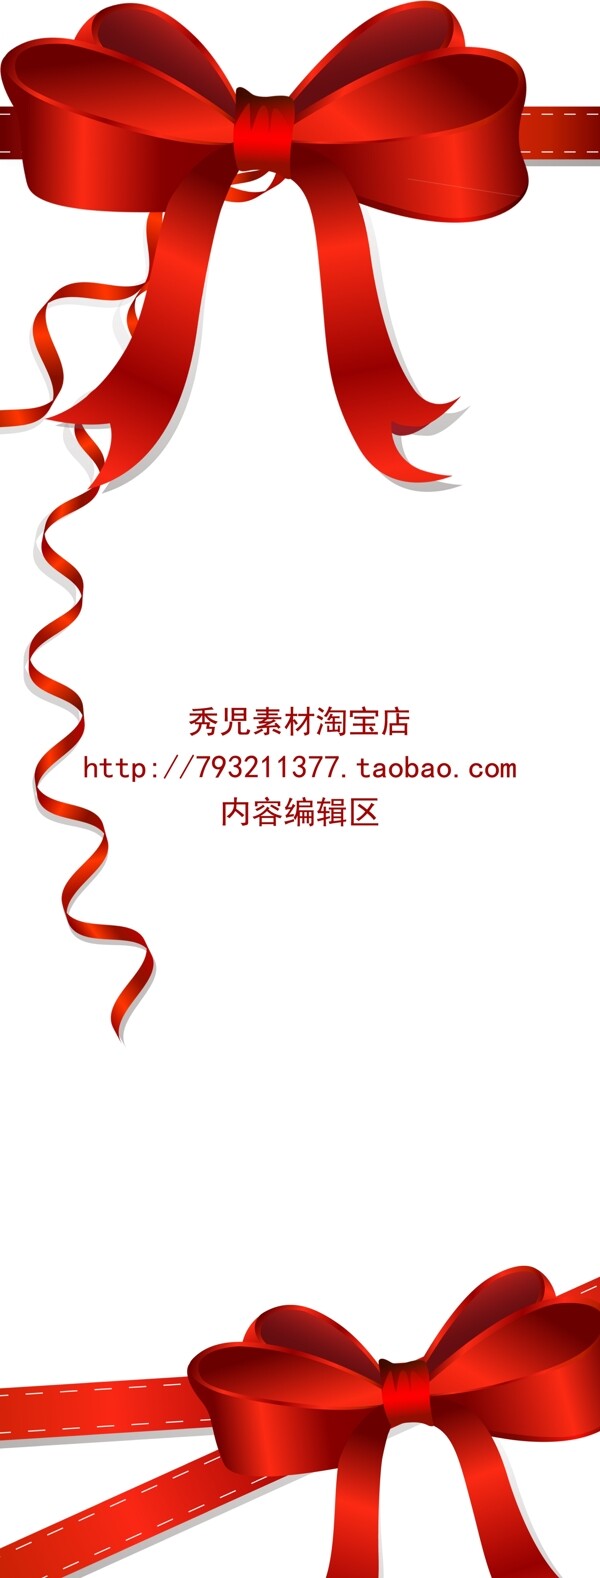 精美红色中国结展架设计素材海报画面